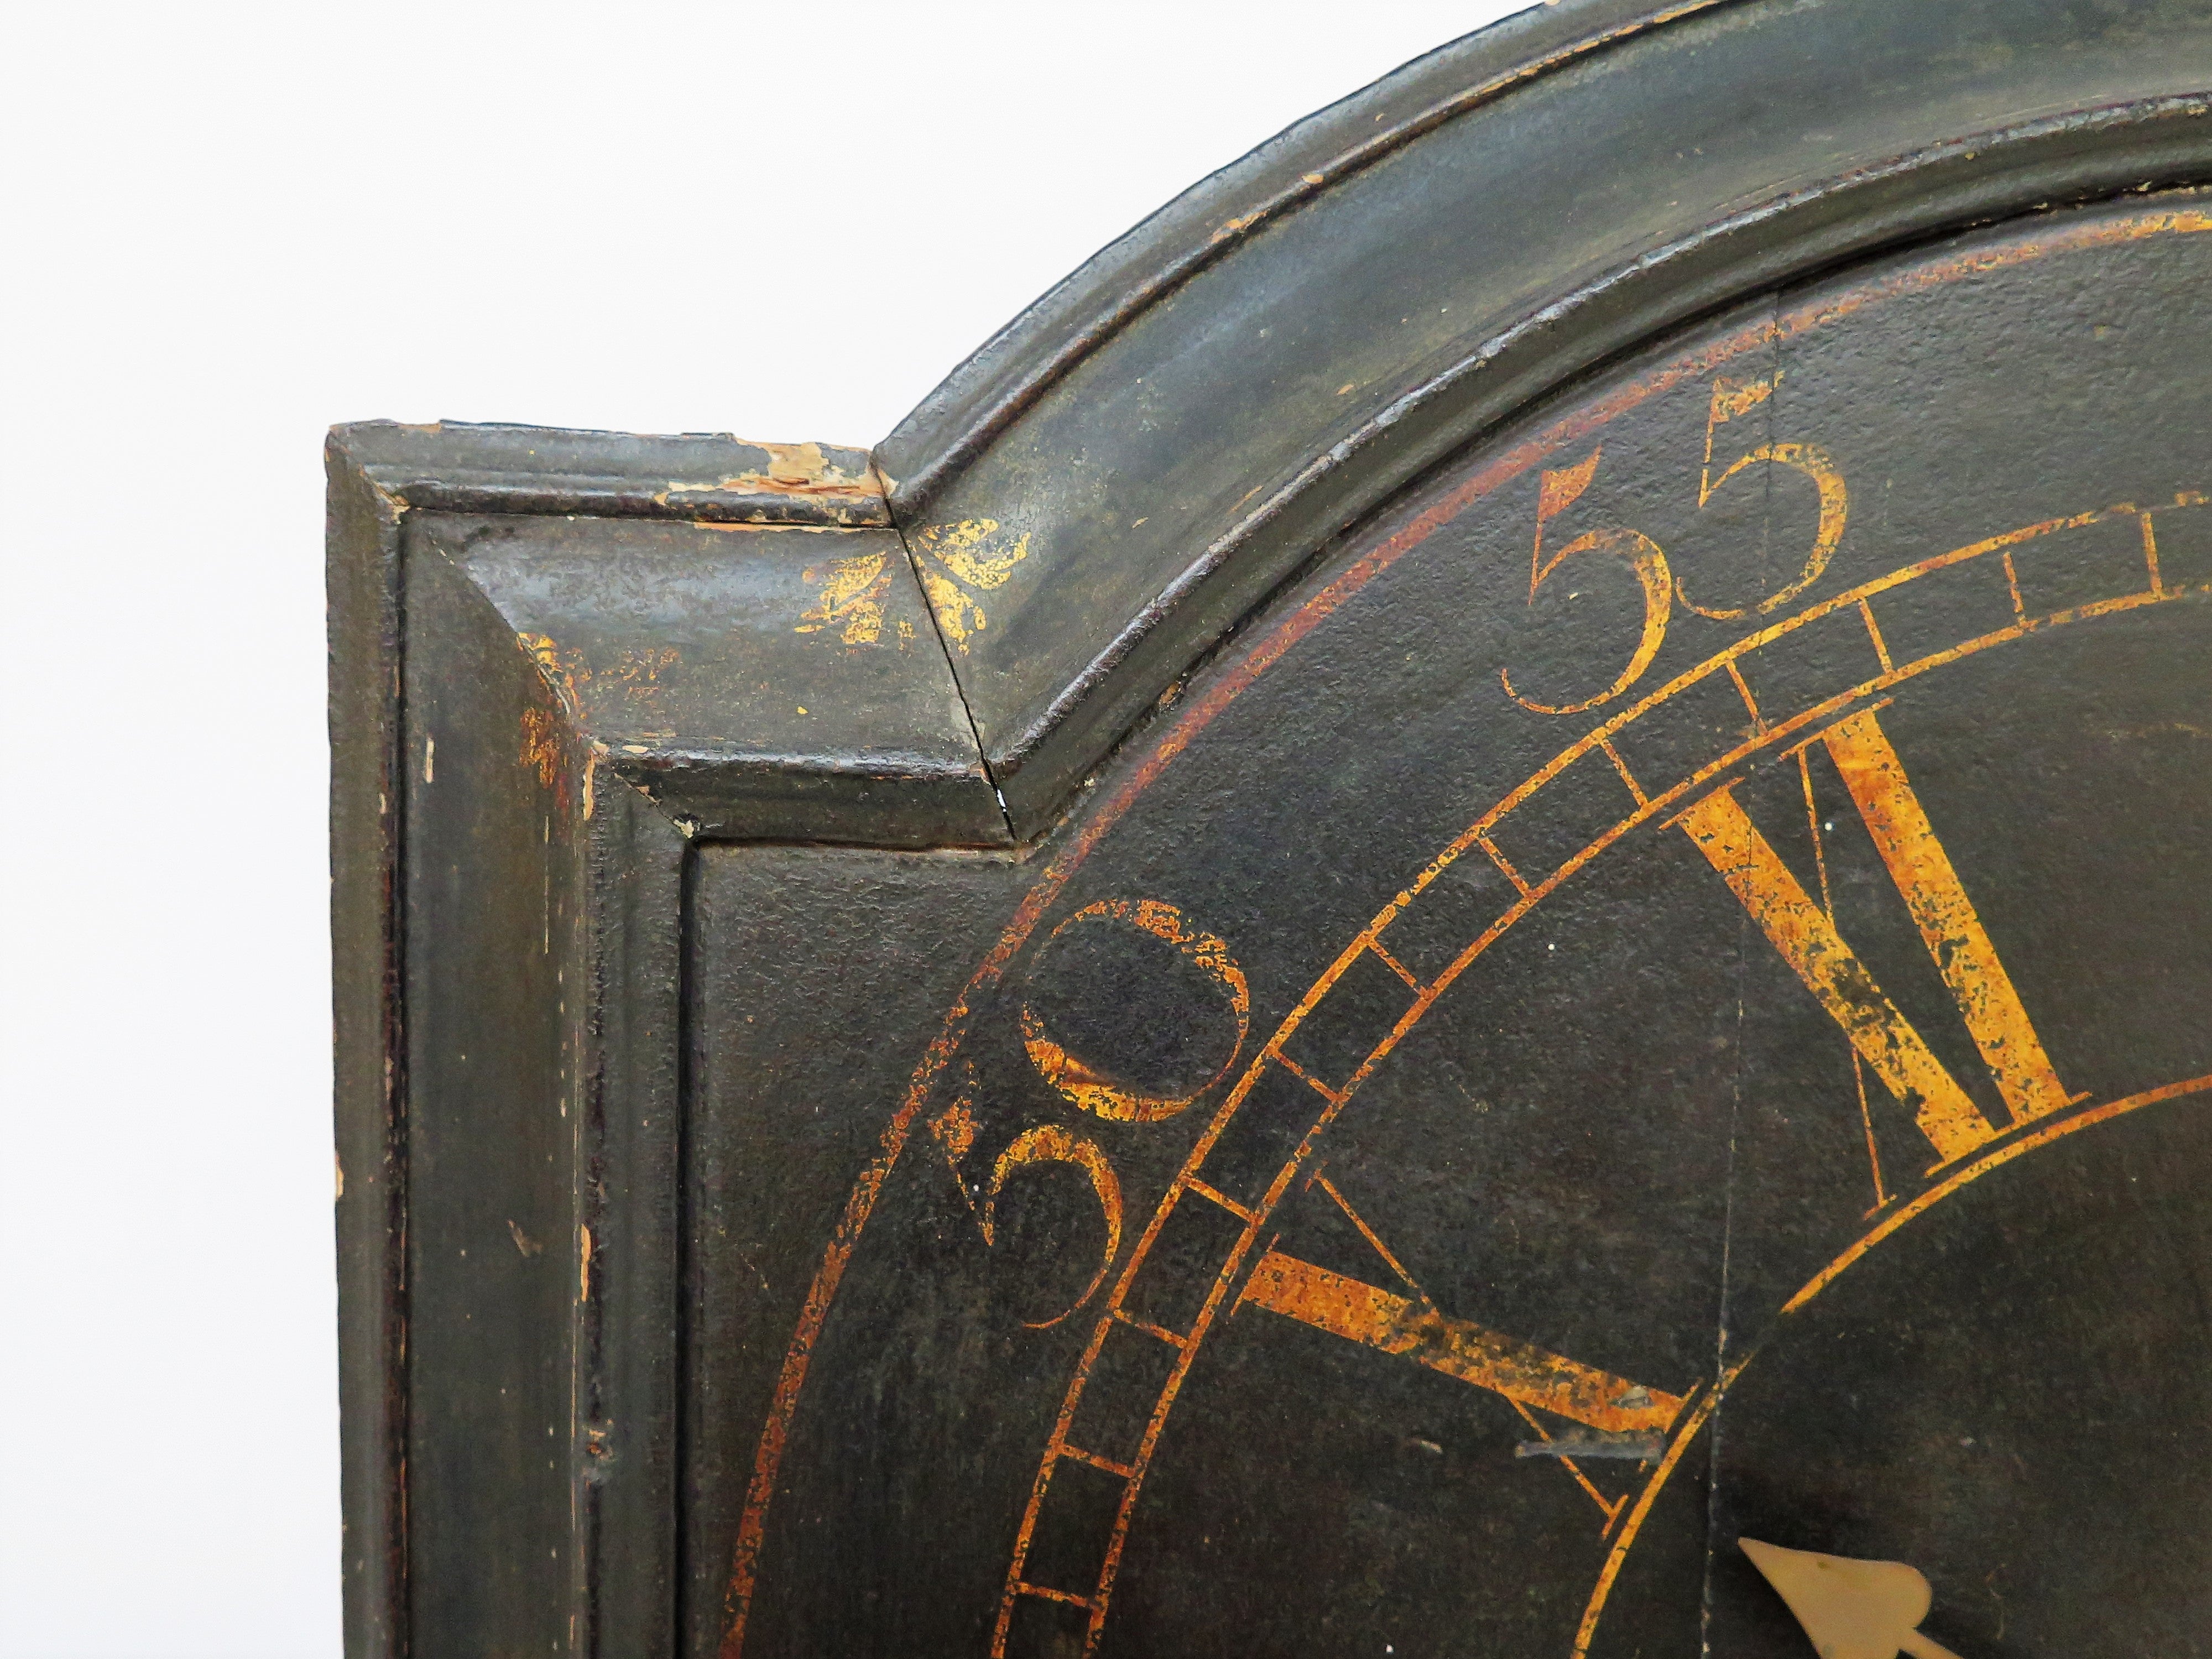 English Act of Parliament Wall Clock / Tavern Clock